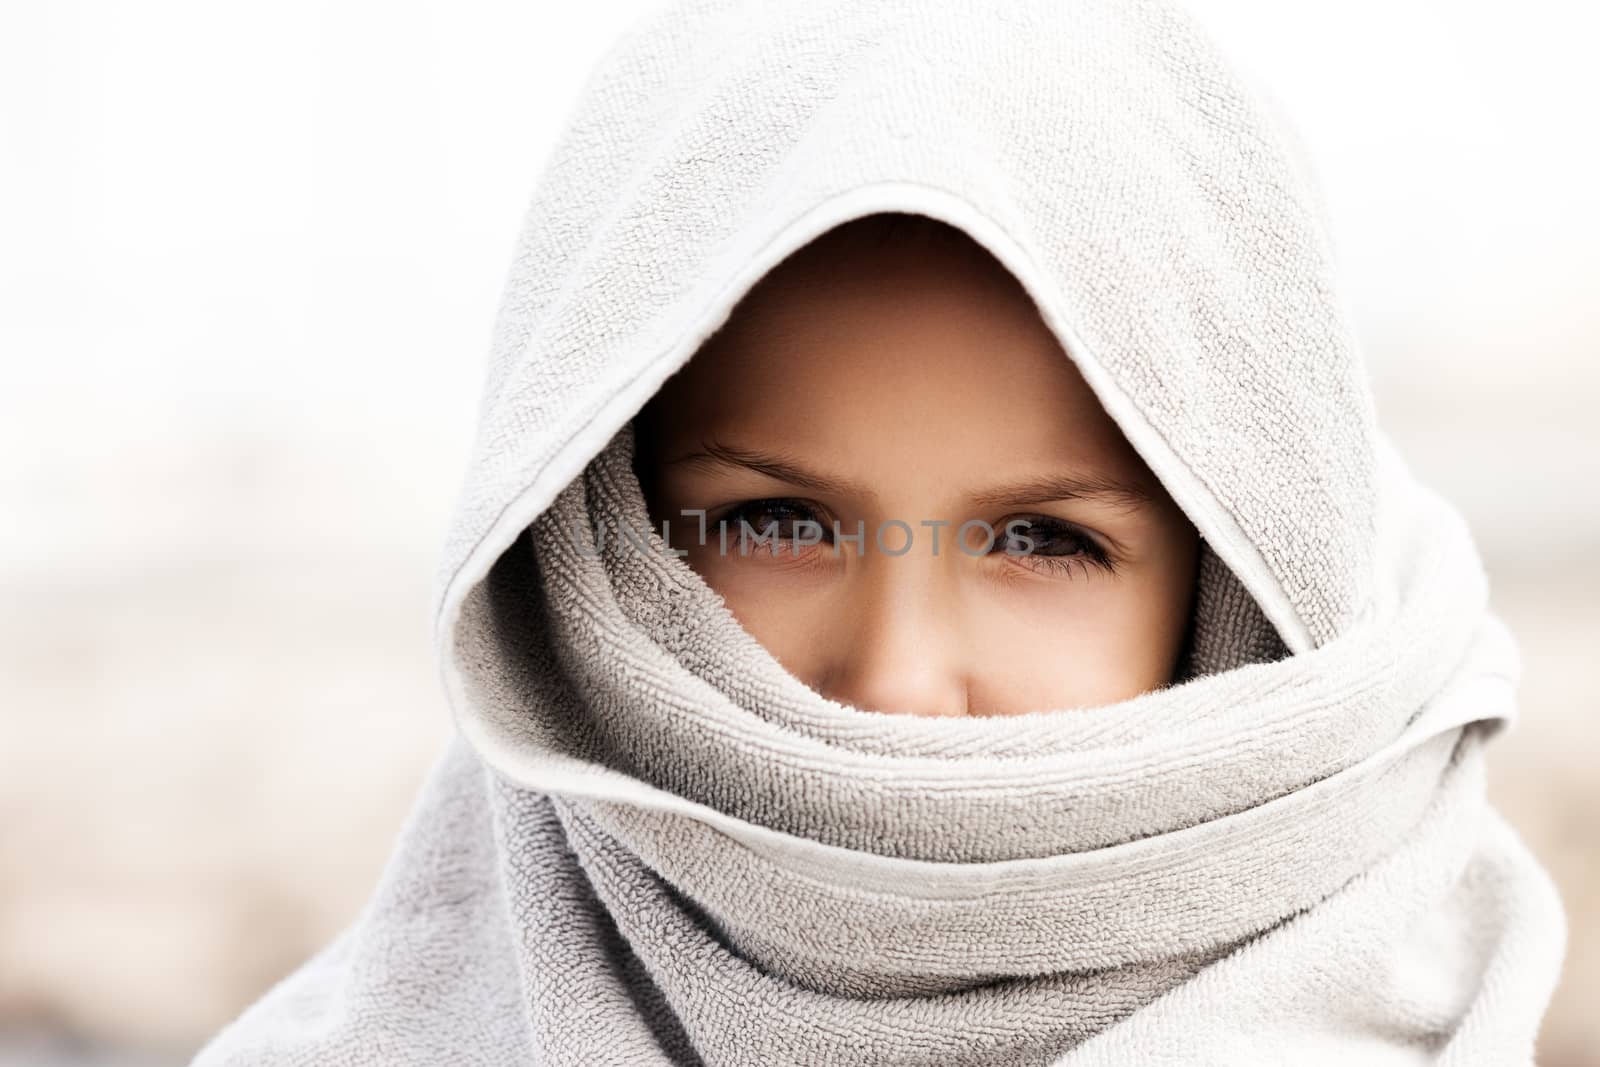 Little child boy wearing arabian burka style clothing by ia_64